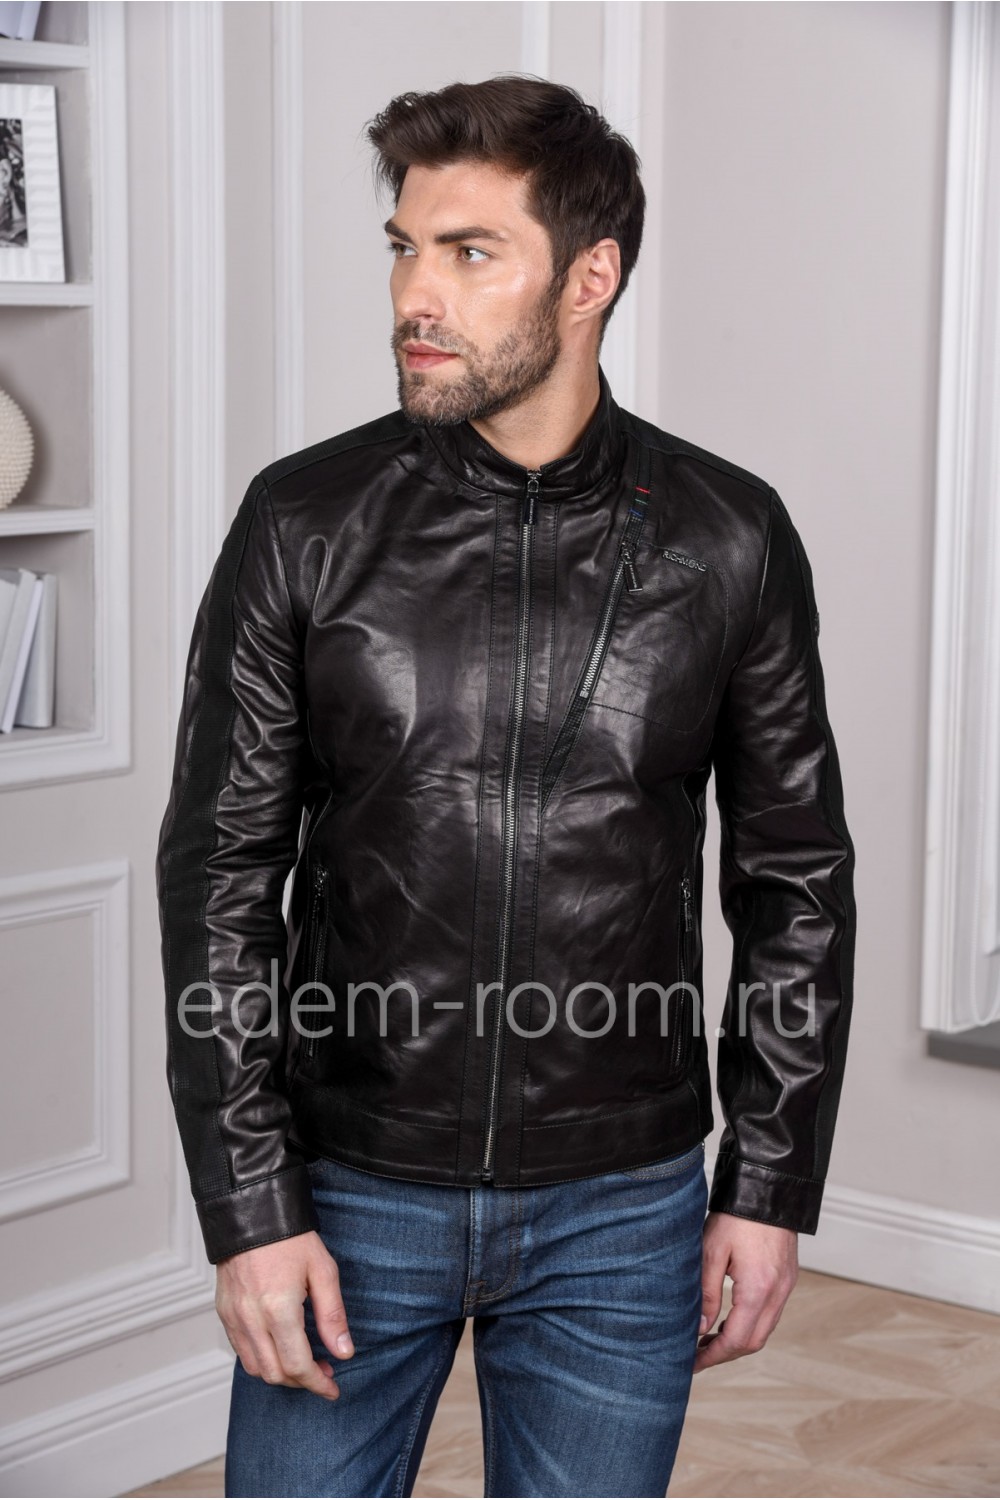 Модная мужская кожаная куртка, черный цвет - 2019